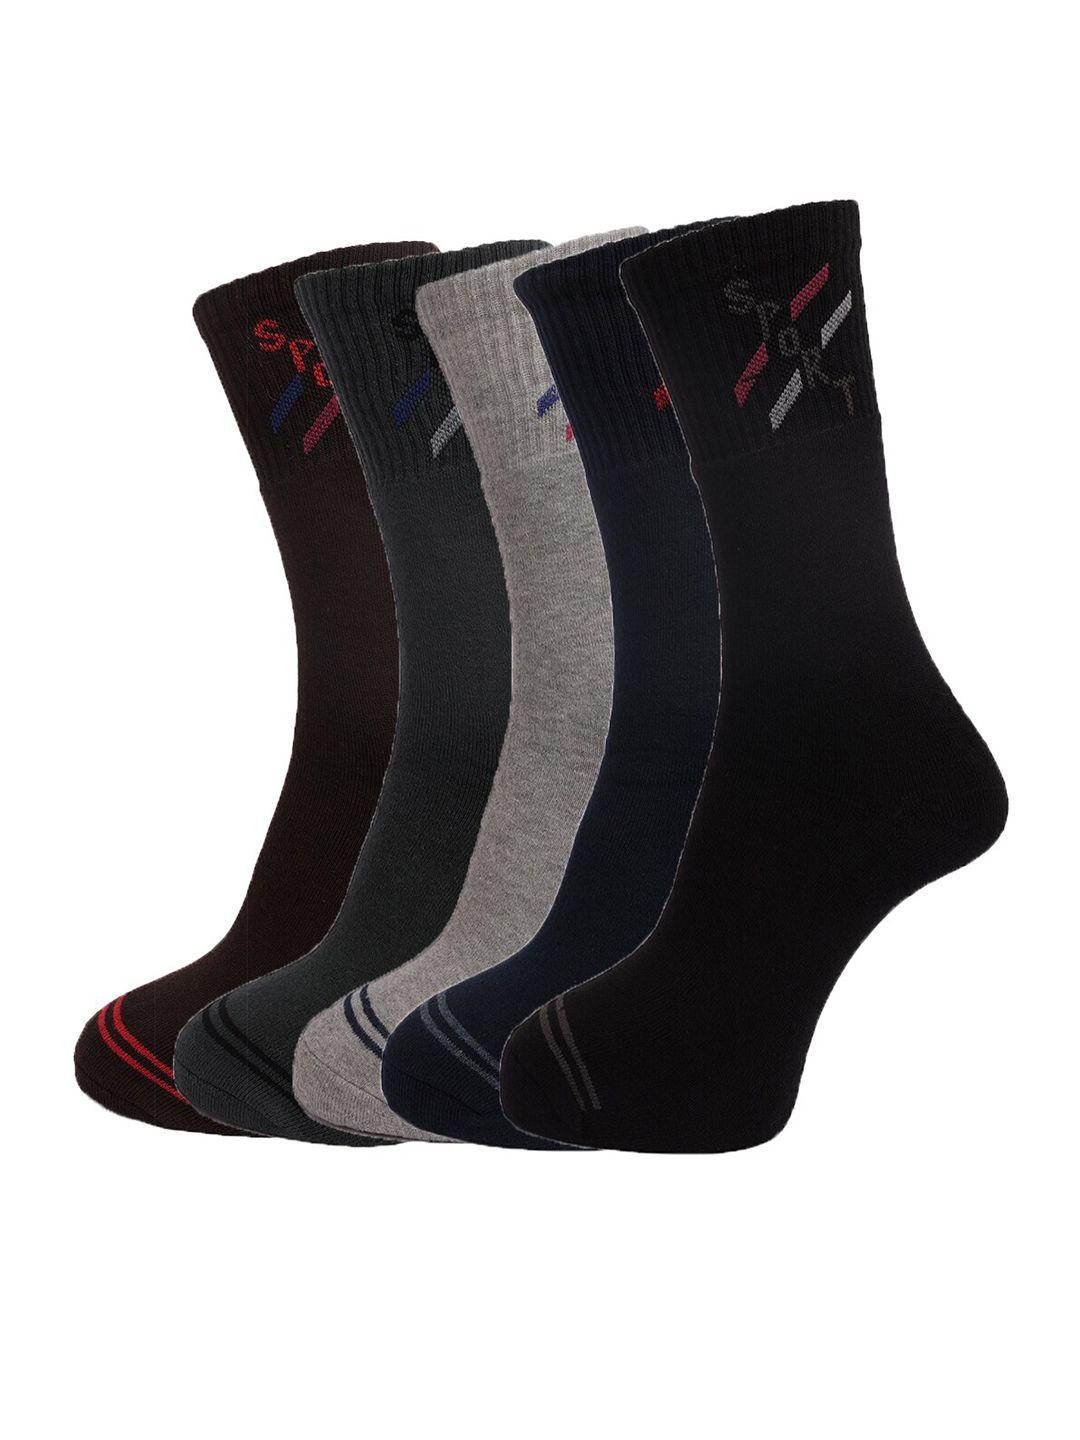 dollar-socks-men-pack-of-5-assorted-cotton-above-ankle-length-socks